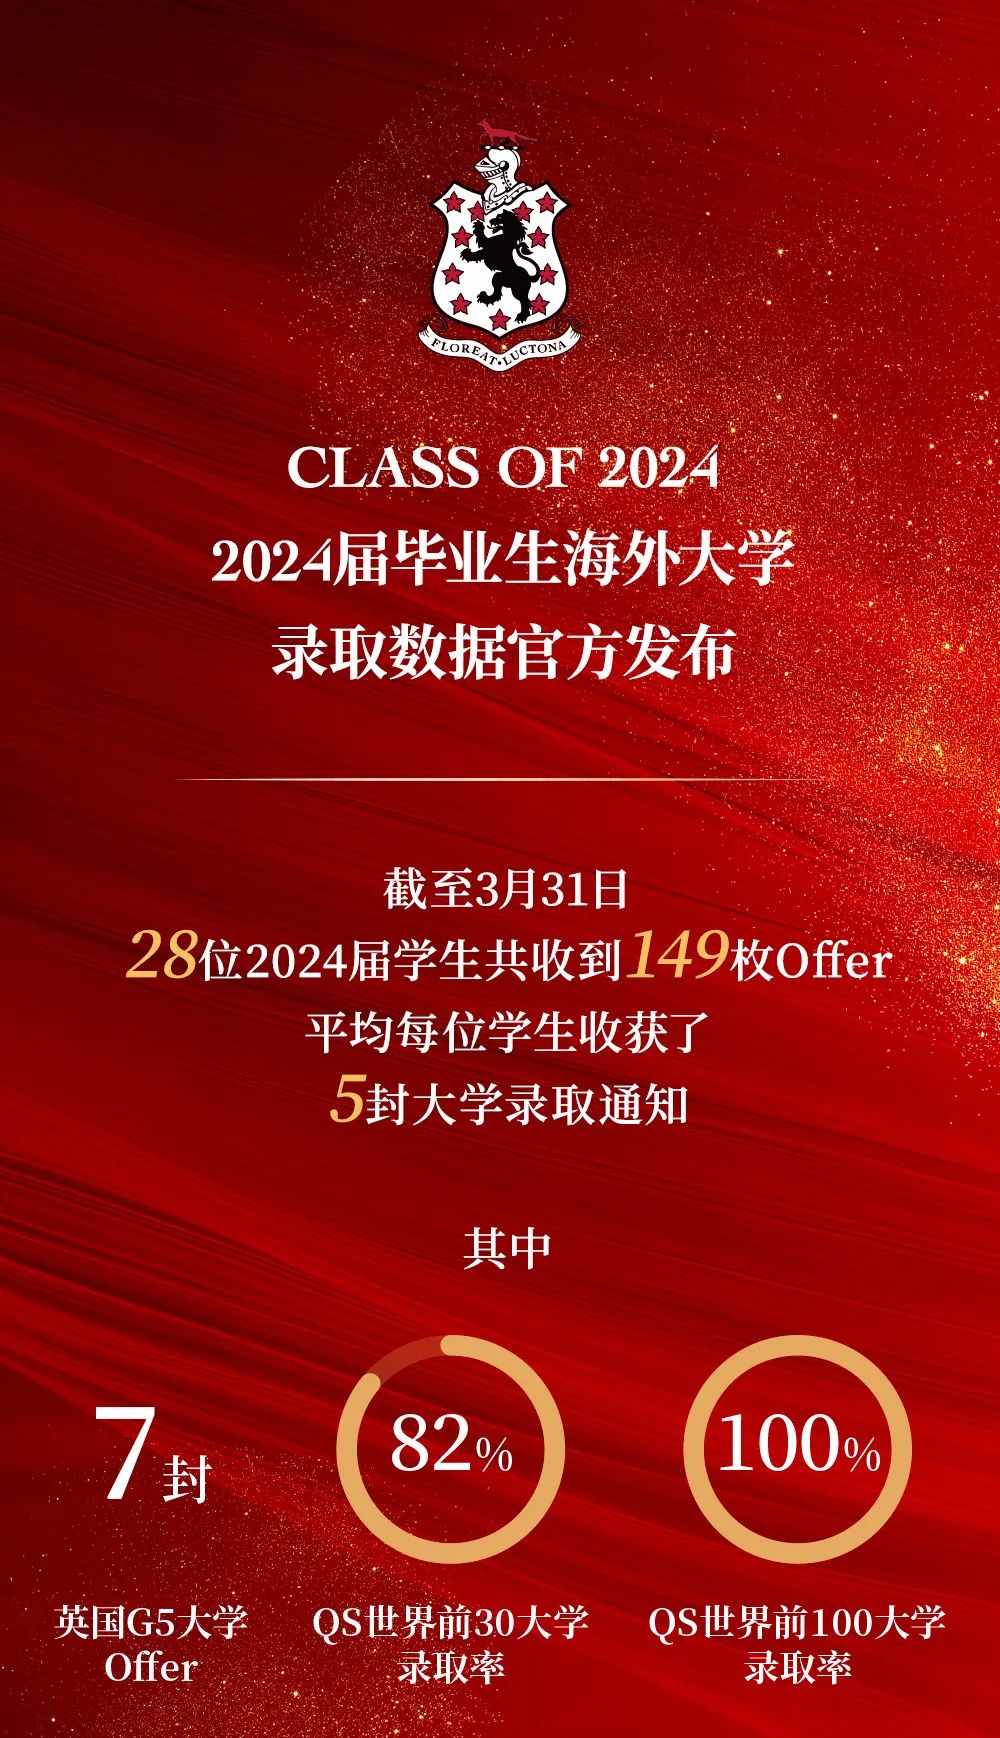 上海莱克顿学校2024届毕业生海外大学录取官方发布